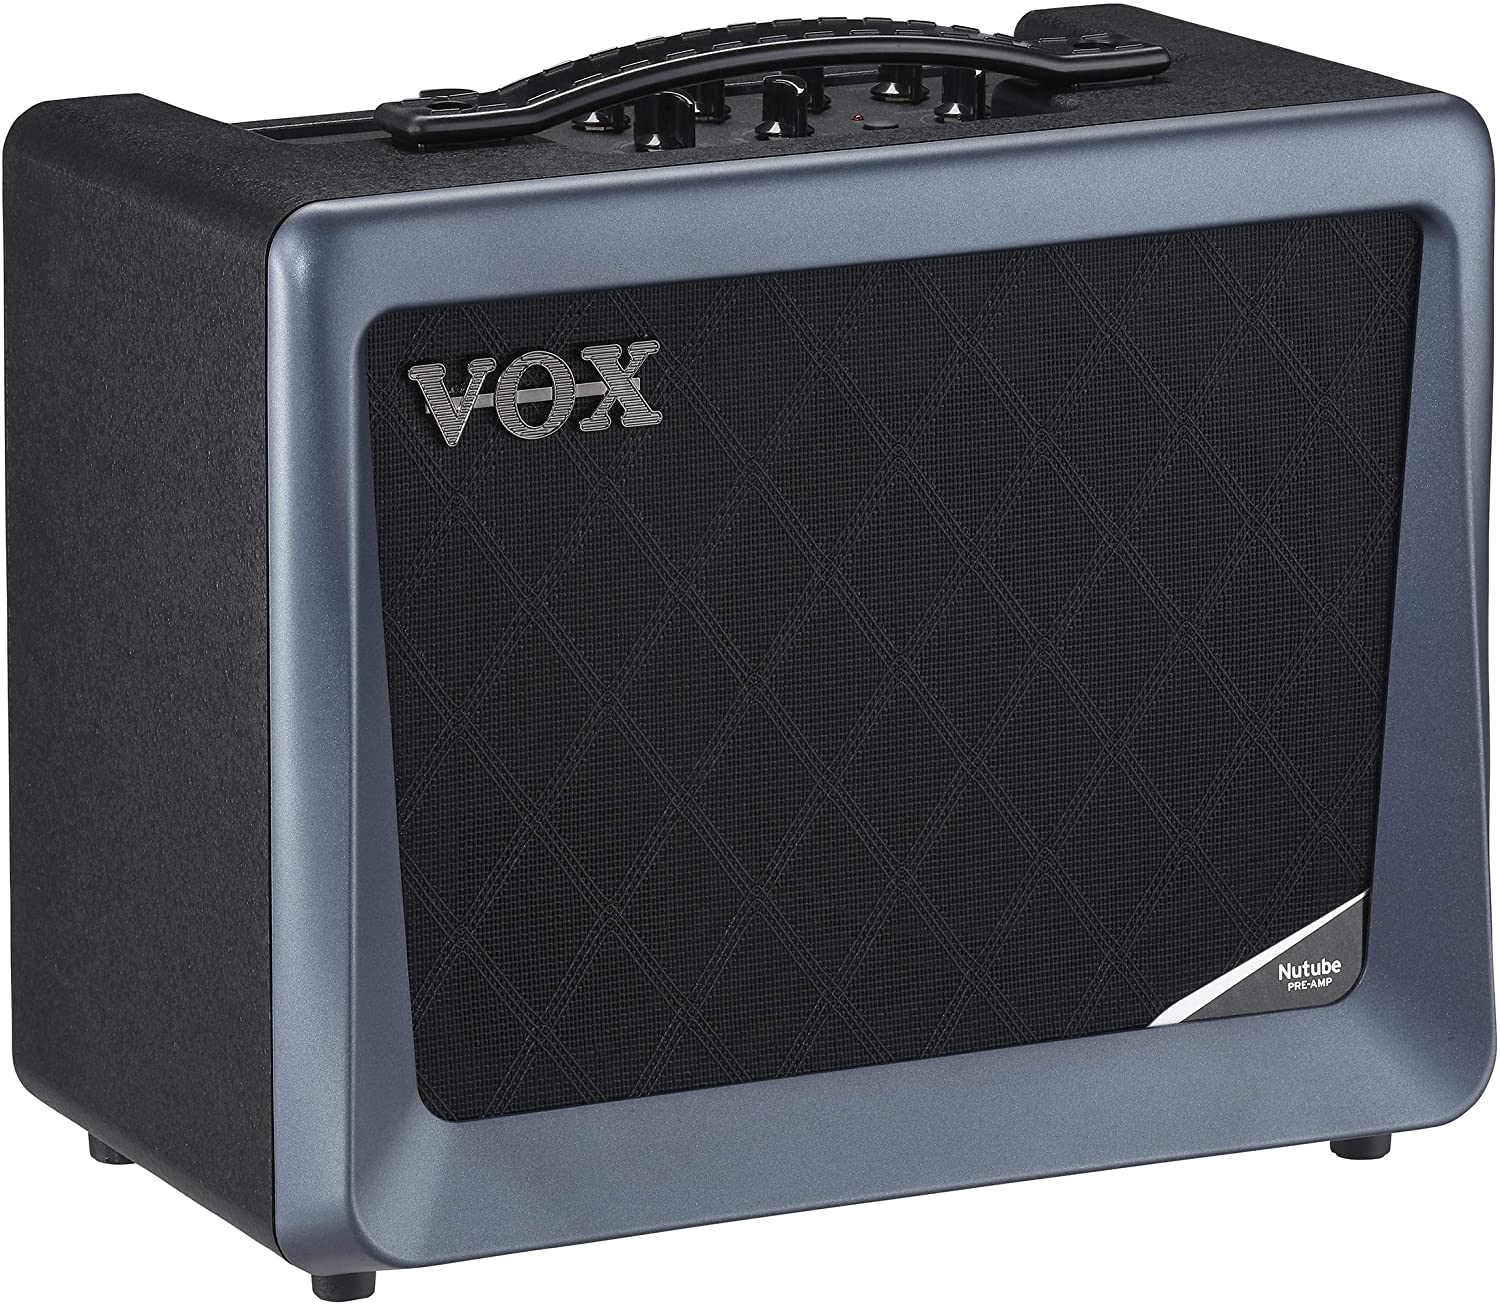 2. Vox VX50 GTV Digital Modeling Combo Amplifier